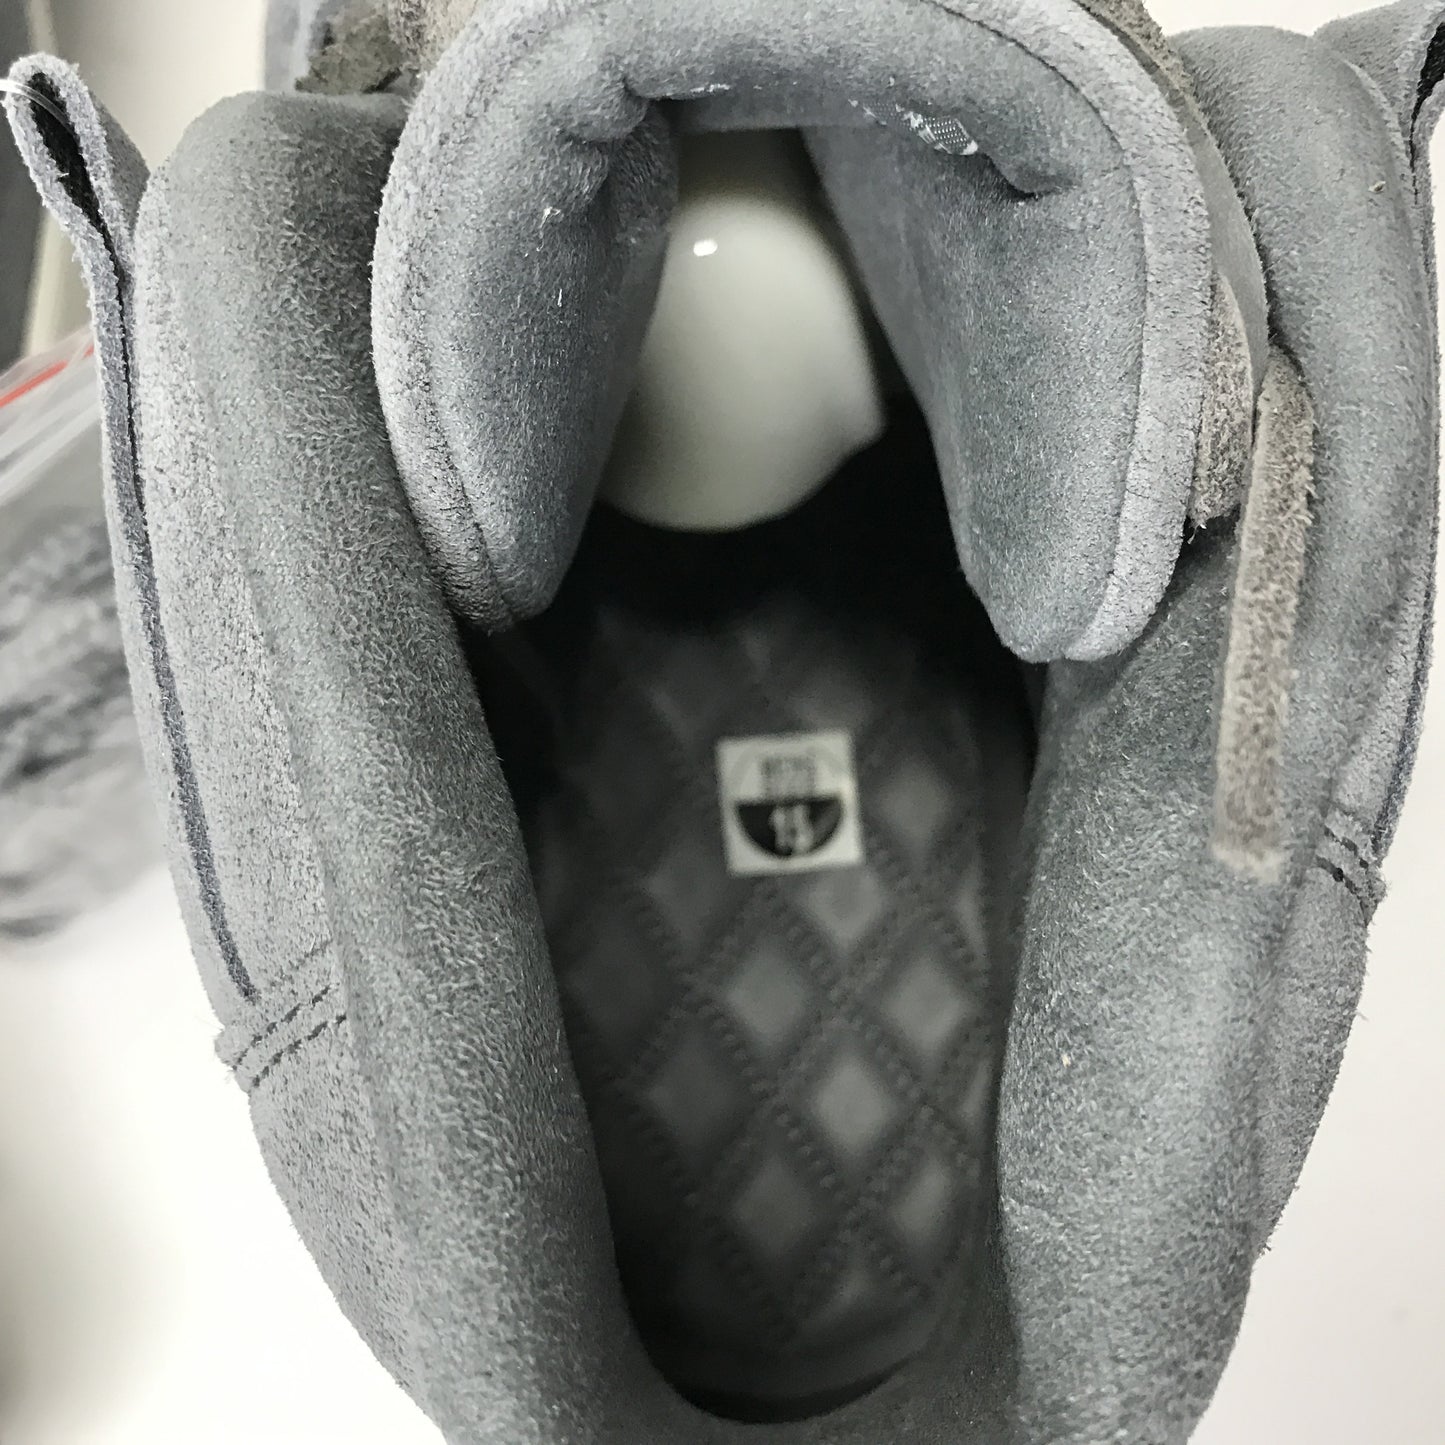 DS Nike Air Jordan 11 XI Retro Prem Pinnacle Grey Suede Size 15